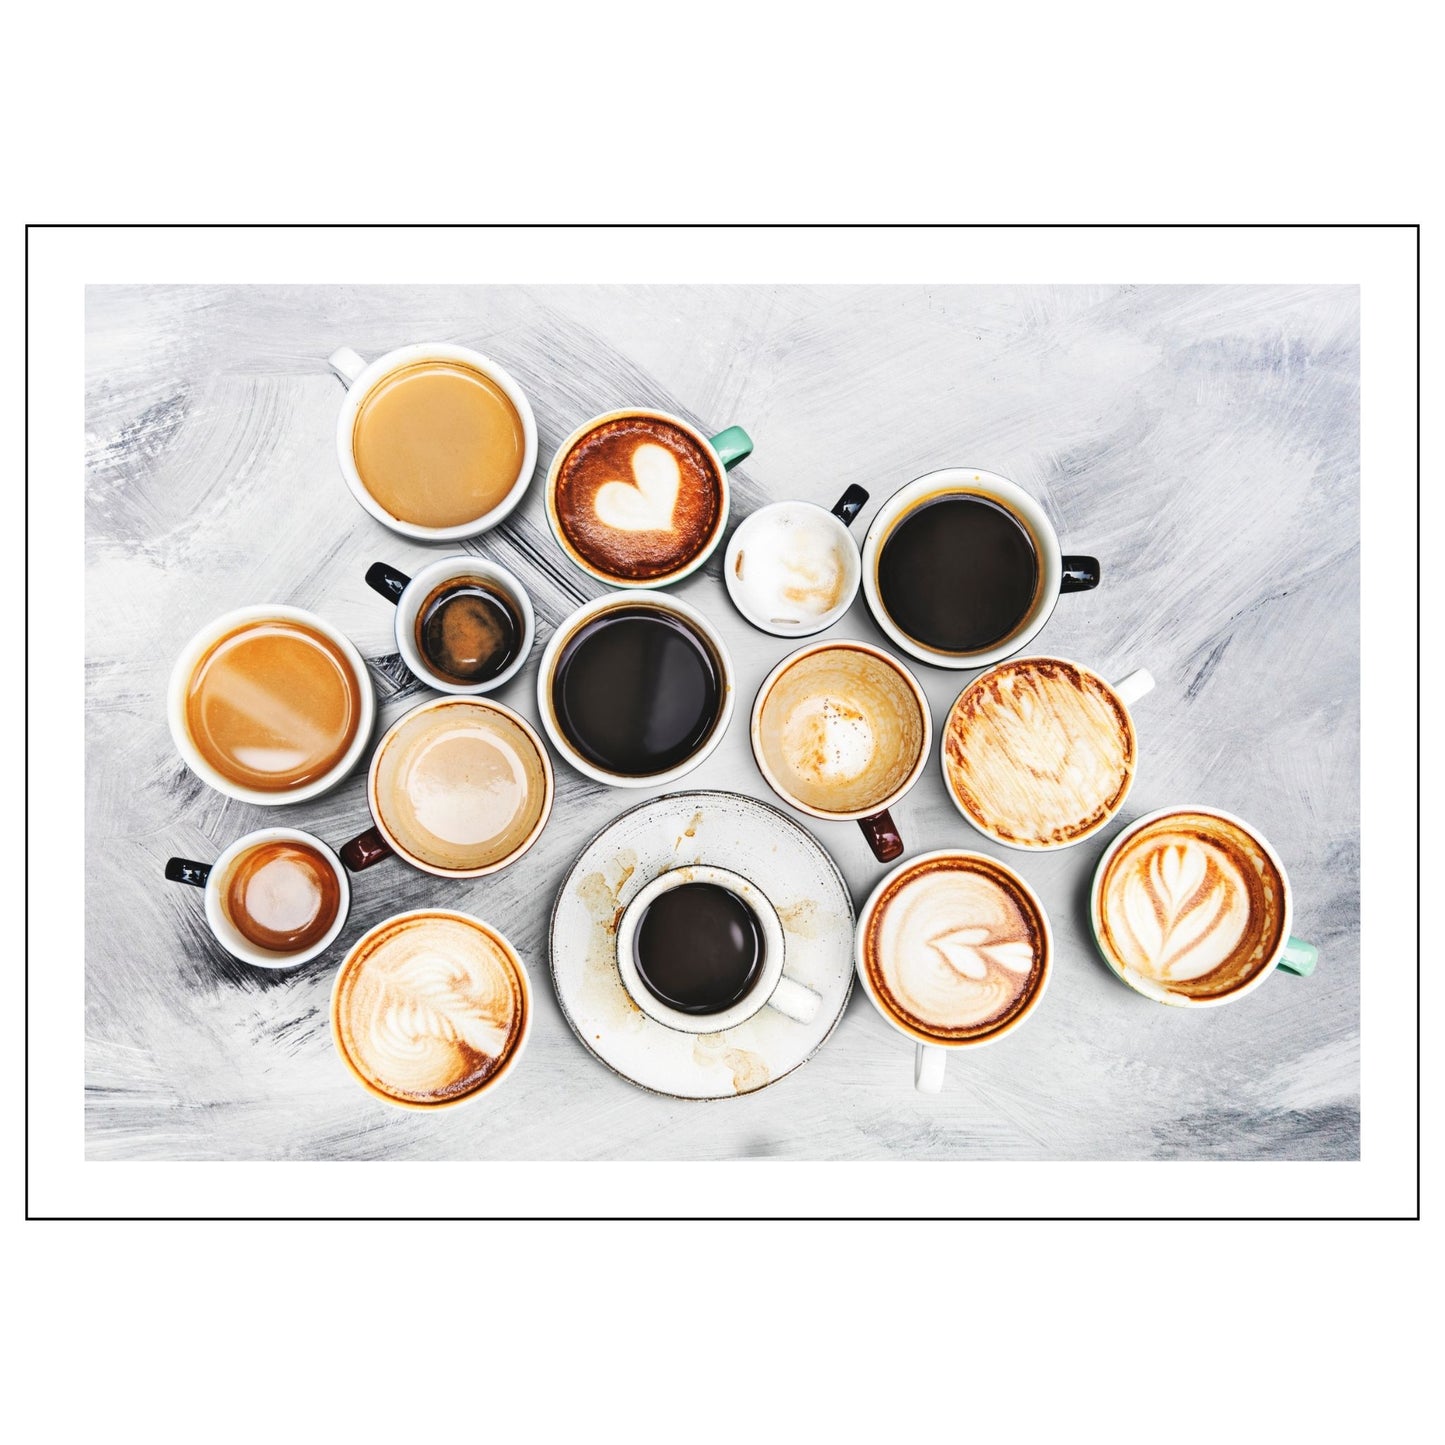 Dekorativ plakat av 15 ulike kpper kaffe som vil passe perfekt på en kjøkkenvegg. Plakaten har en hvit kant som gir bildet mer dybde og fremhever motivet.